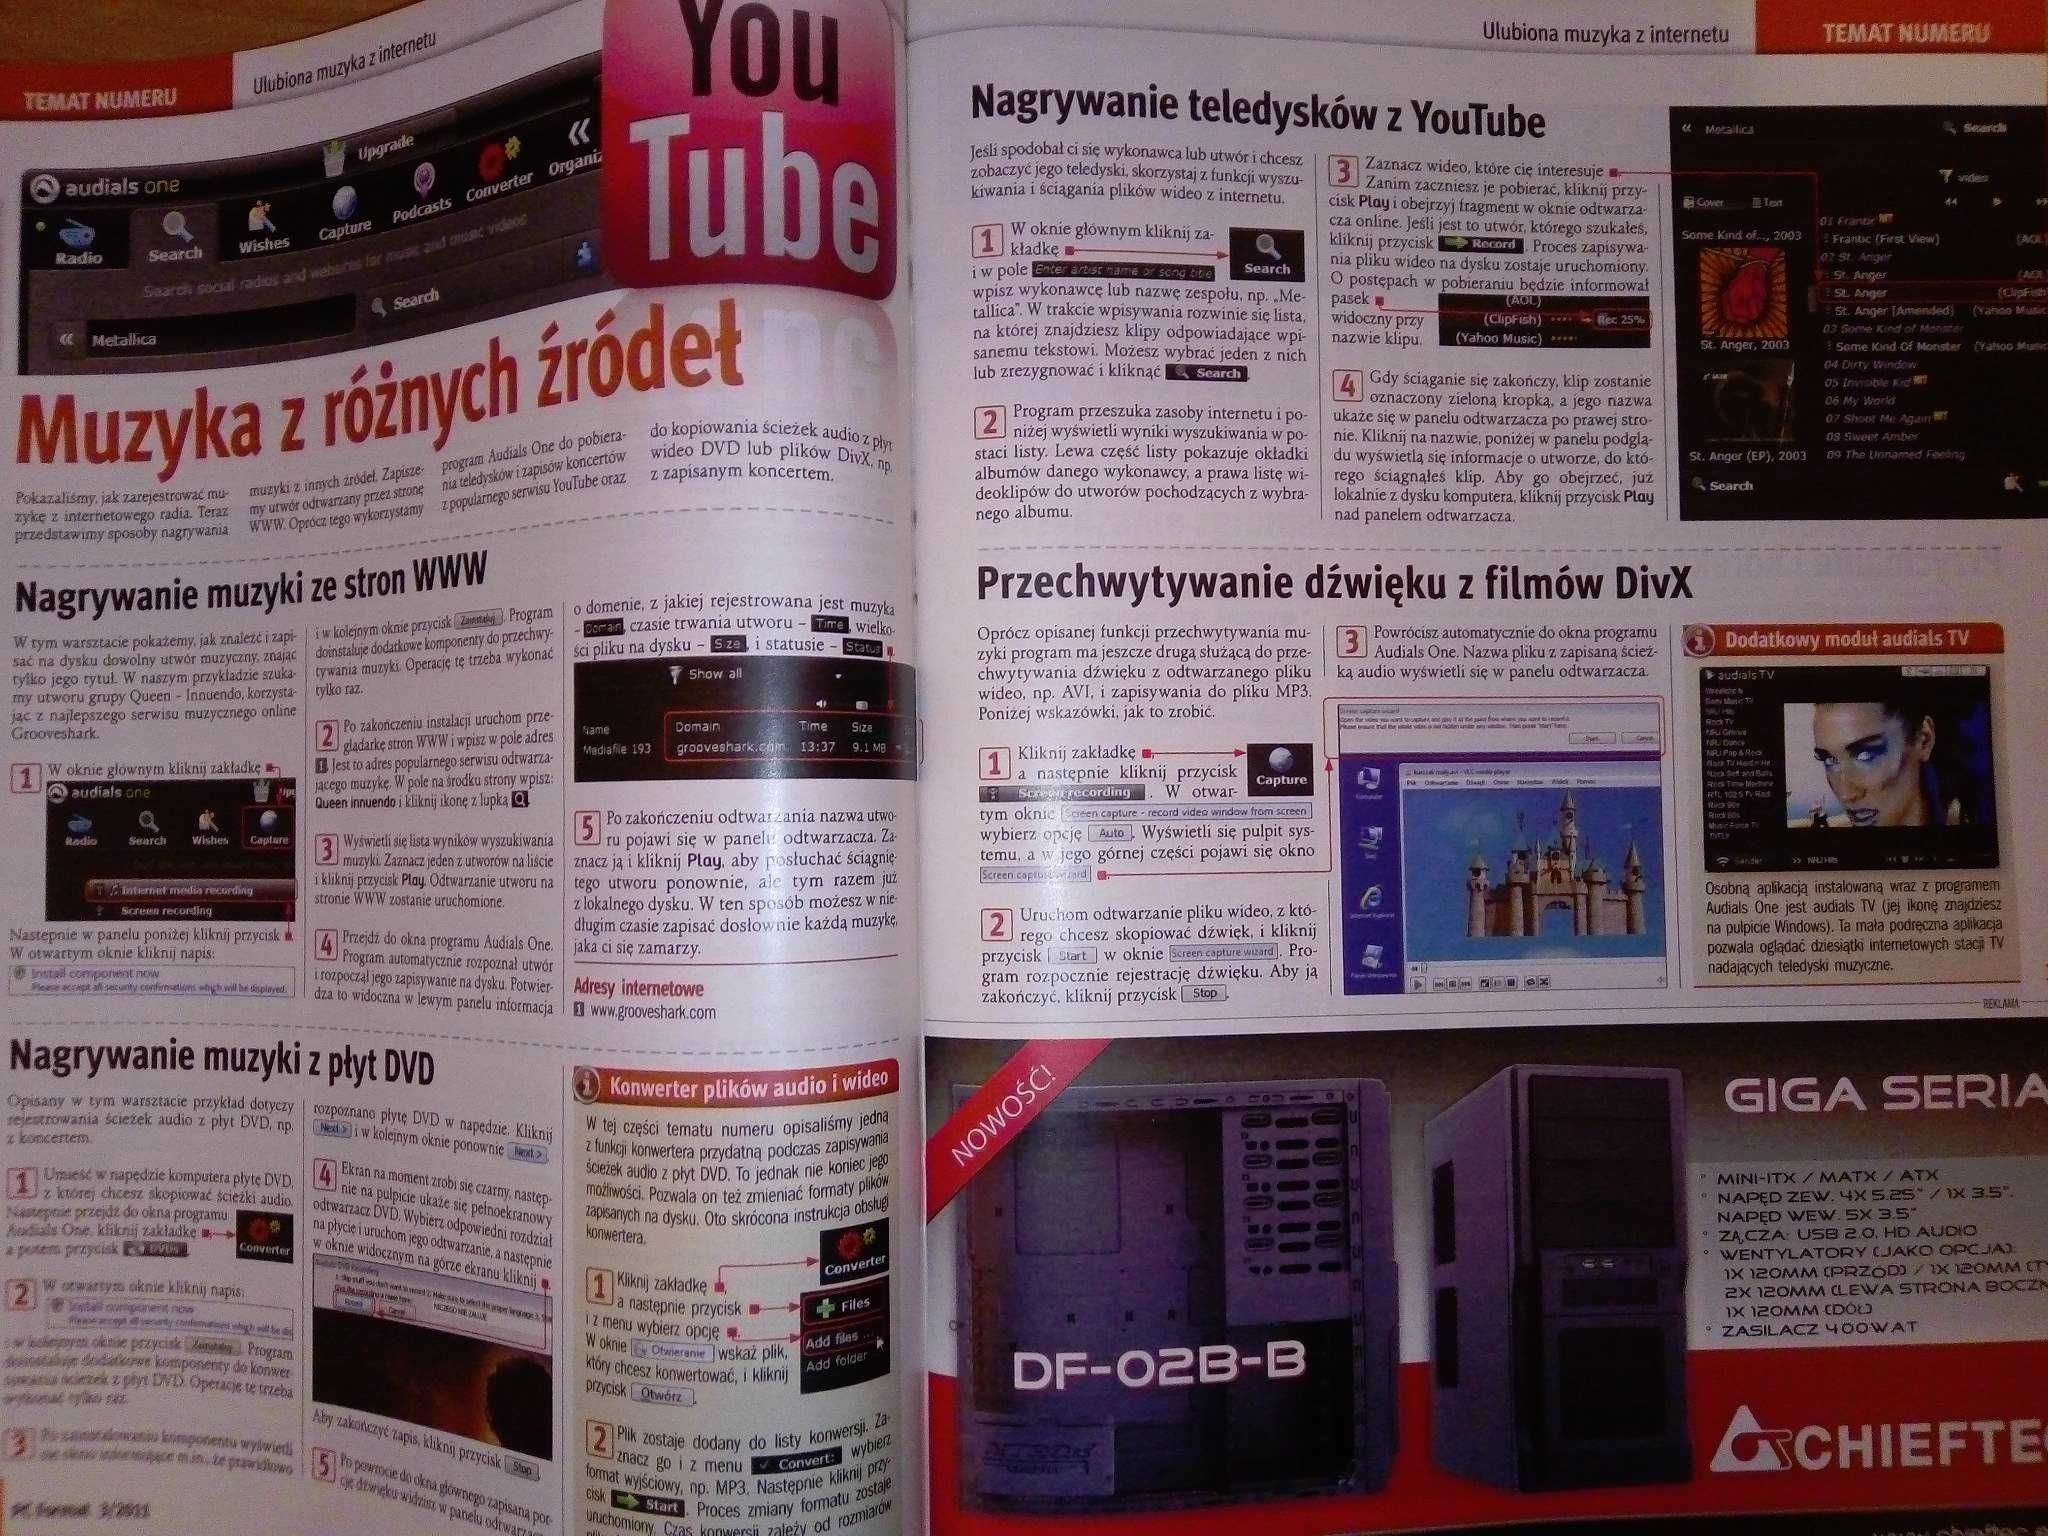 PC Format 3 2011 marzec (127) Gazeta + płyta CD Czasopismo